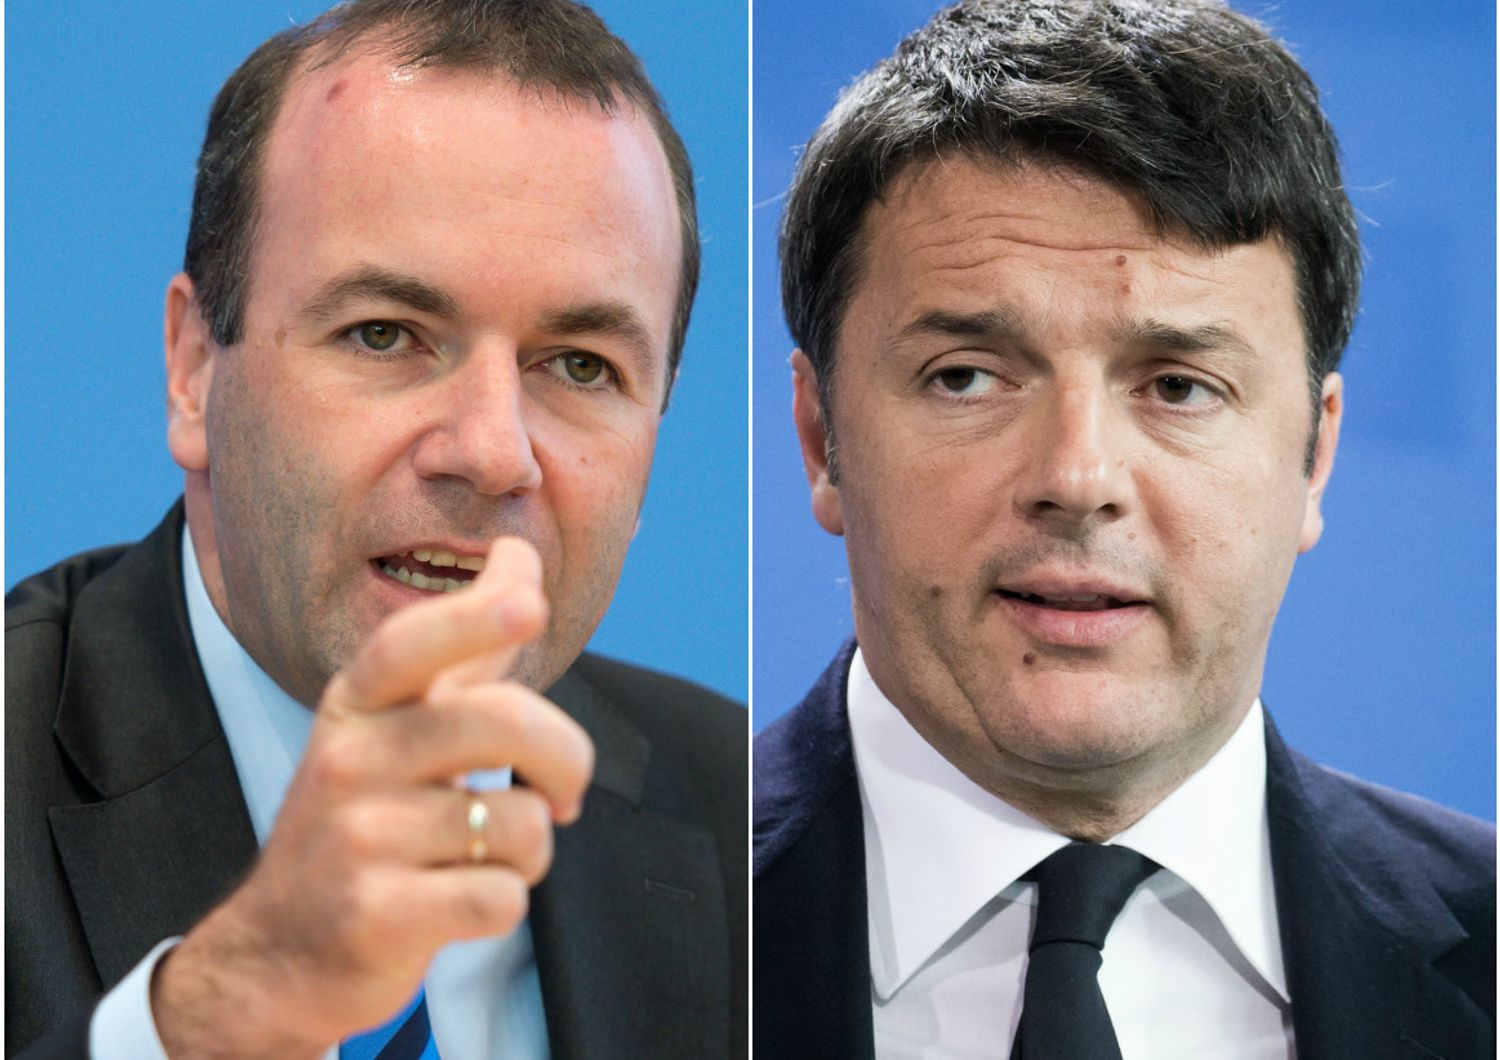 Scontro Ue-Italia, il Ppe attacca Renzi